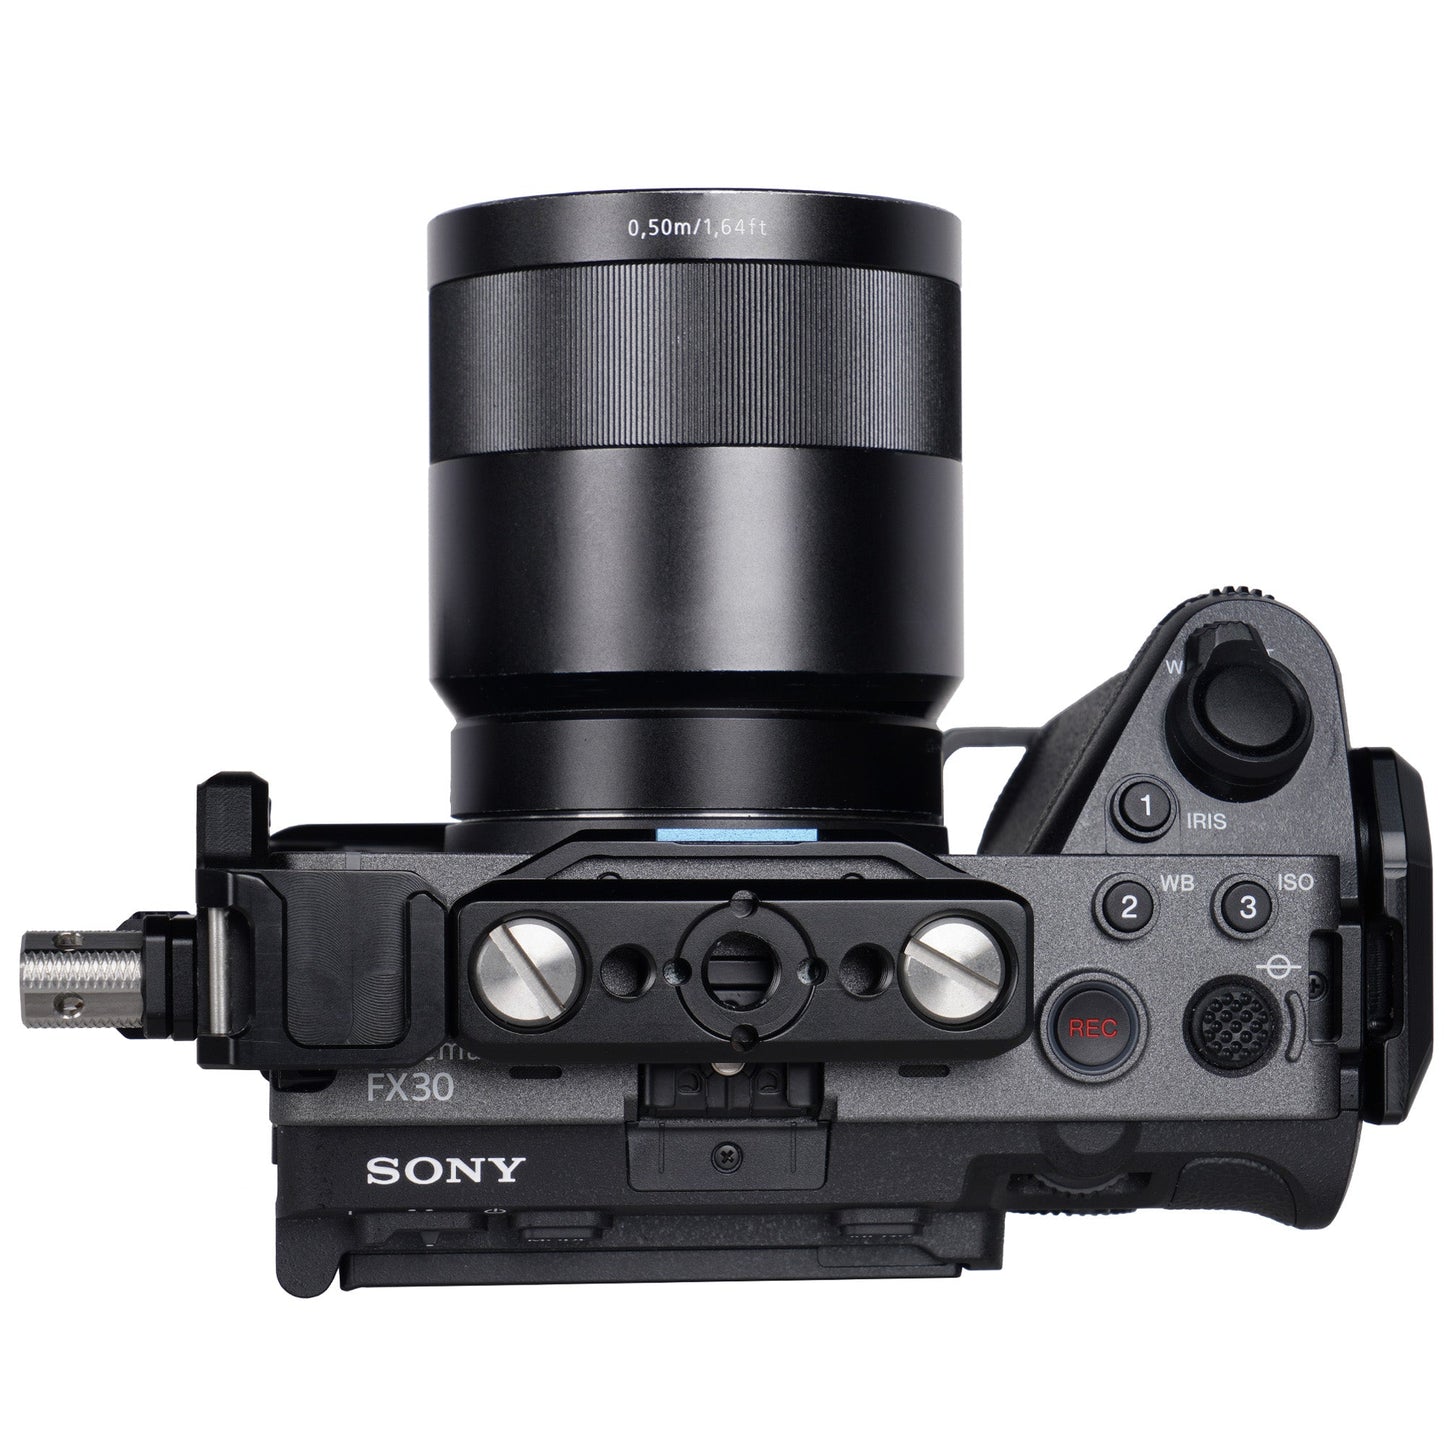 SIRUI SCH-FX3/30 Kamera Cage mit Top-Griff f¨¹r Sony Alpha FX3 / FX30